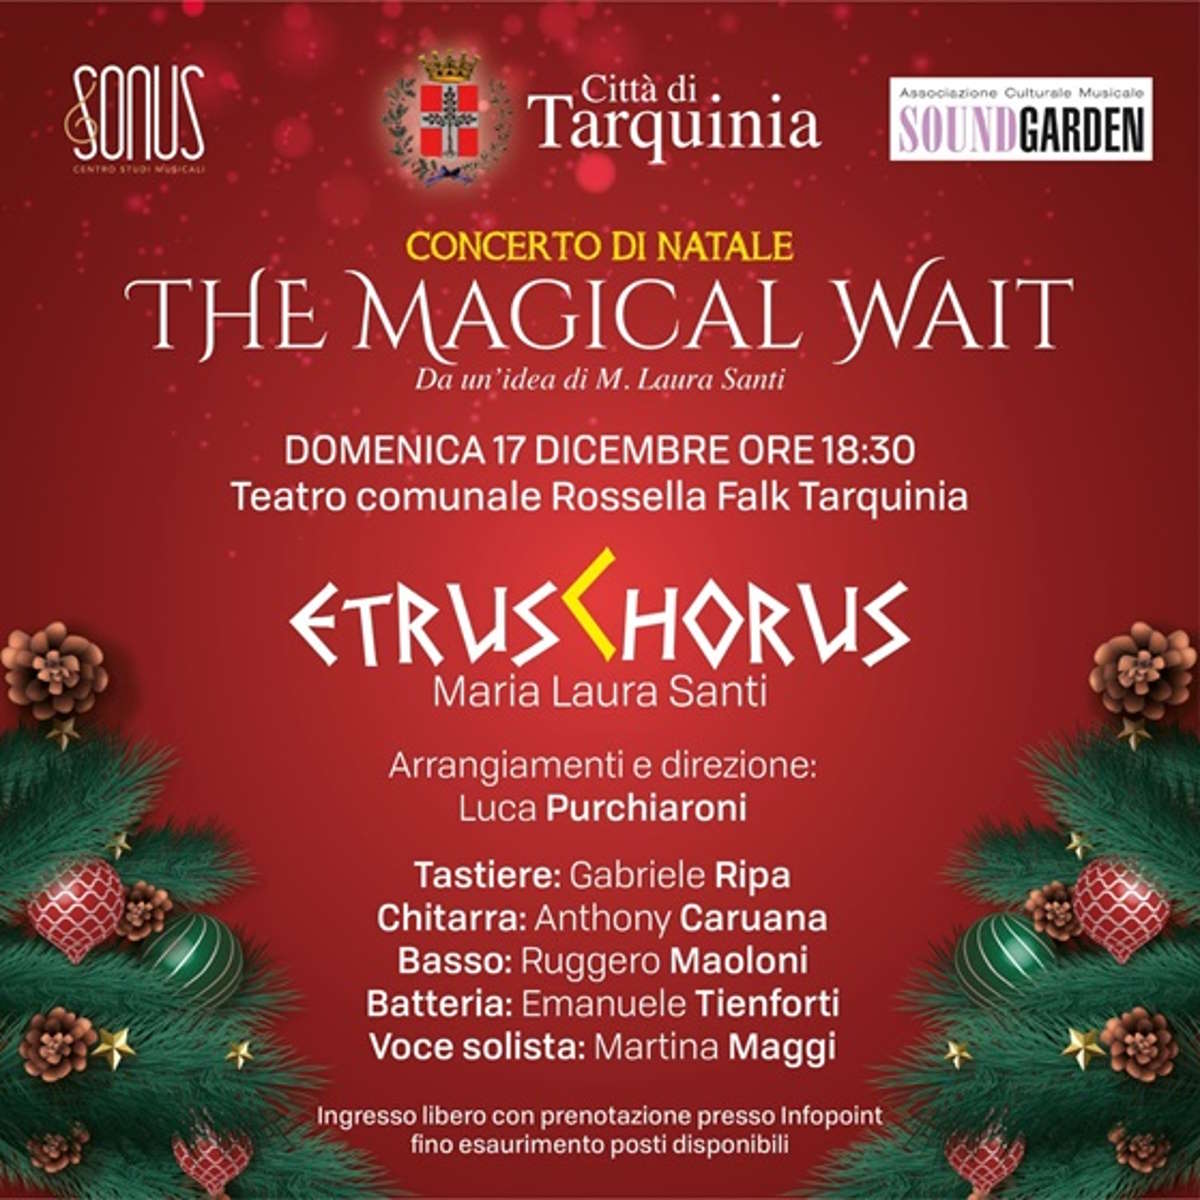 Concerto di Natale The Magical Wait al Rossella Falk di Tarquinia